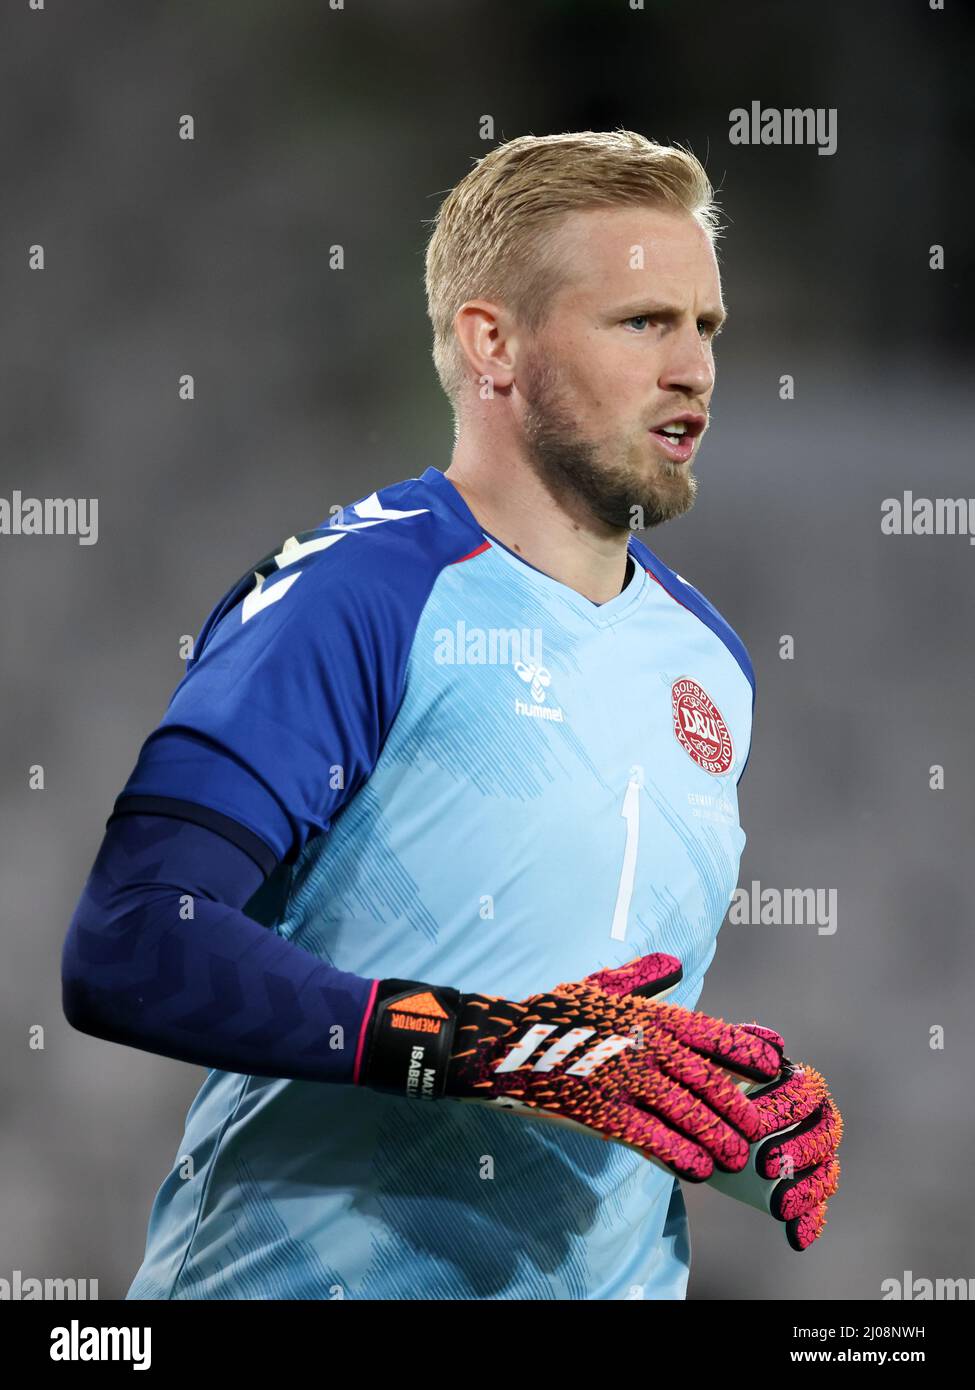 Kasper Schmeichel Fussball LŠnderspiel Deutschland - DŠnemark 1:1 © diebilderwelt / Alamy Stock Foto de stock